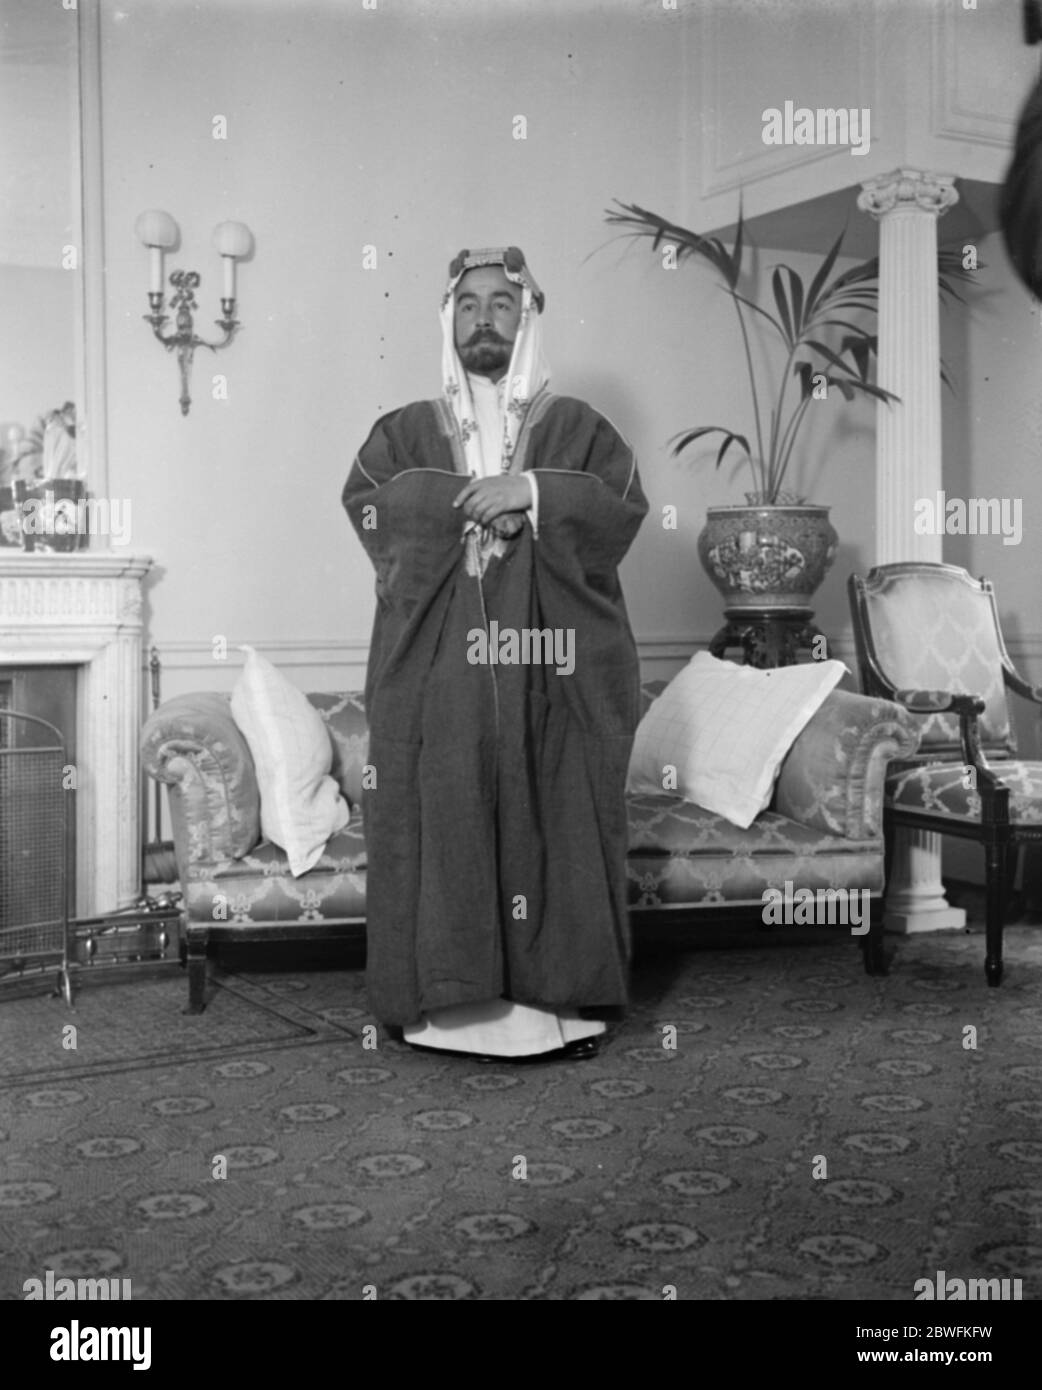 Emir Abdullah à Londres l'Emir Abdullah de la transjordanie, deuxième fils du roi du Hedjaz, est arrivé à Lonodn pour discuter des affaires transjordaniennes . L'Emir Abdullah à l'hôtel Carlton 16 octobre 1922 Banque D'Images